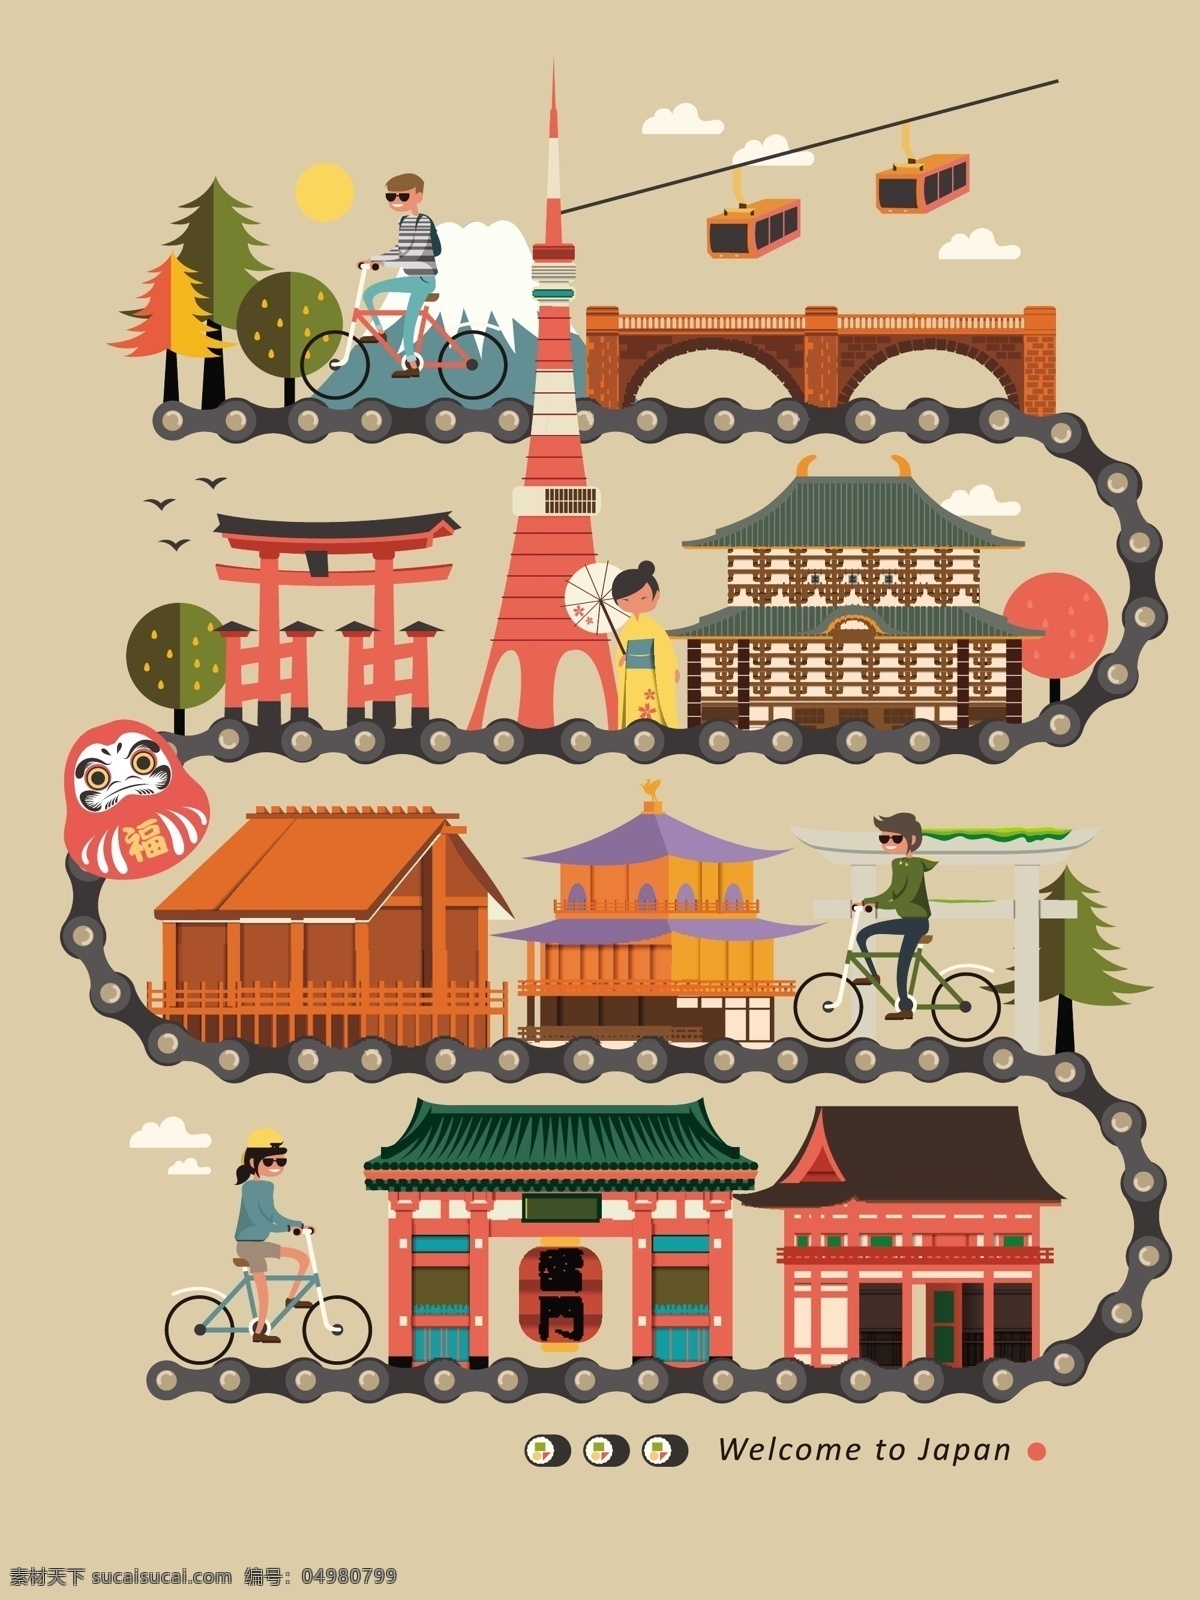 日本旅游 旅行 地图 广告 矢量 旅游 卡通 矢量素材 日本 设计素材 平面设计 装饰背景